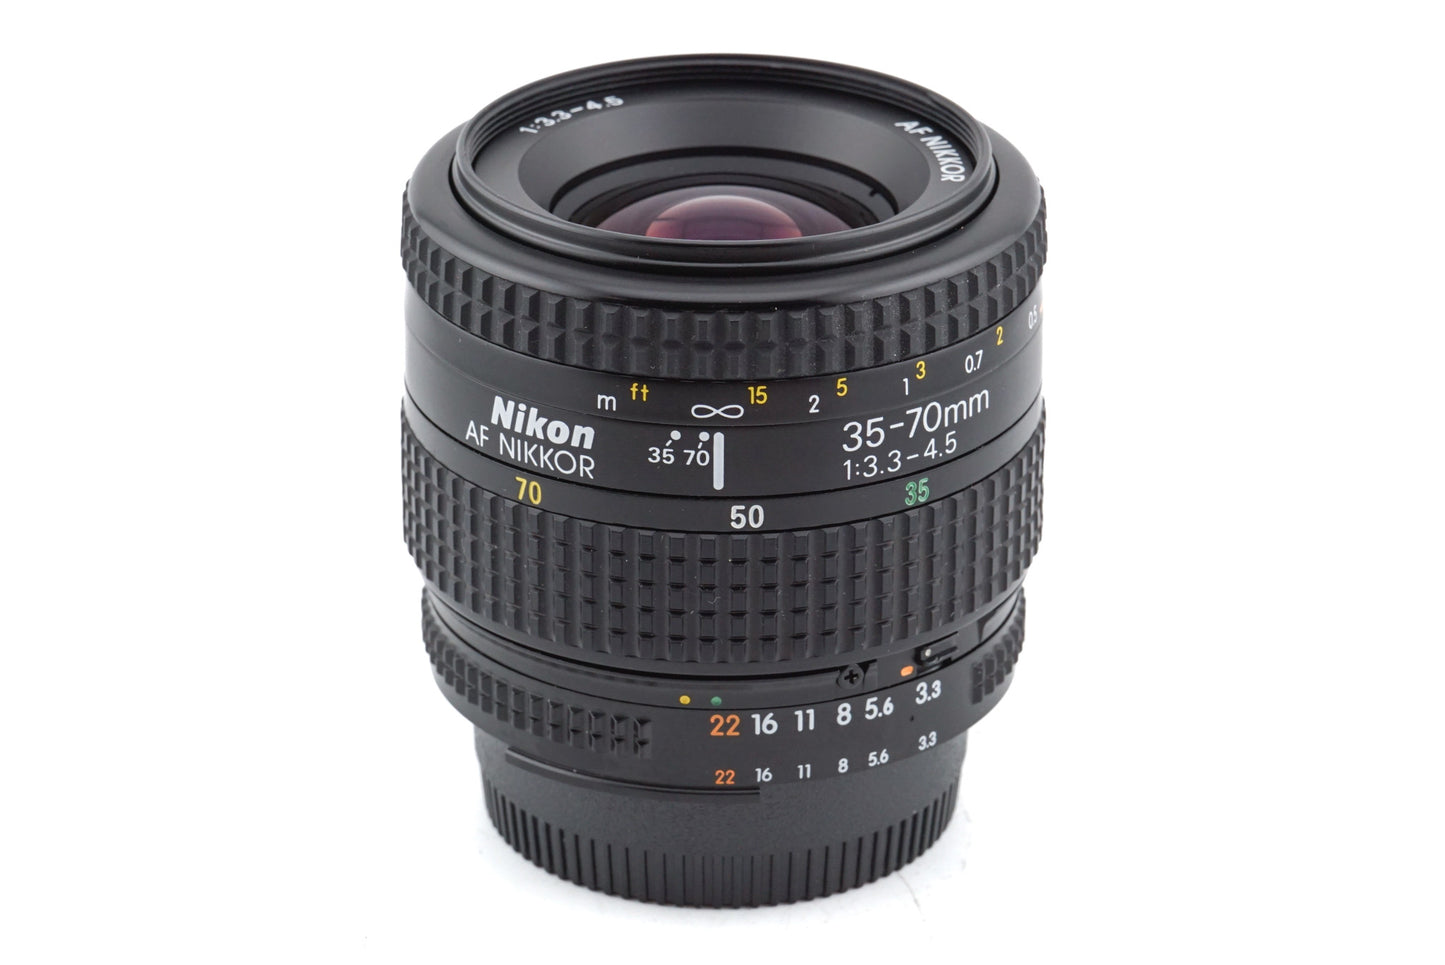 Nikon 35-70mm f3.3-4.5 AF Nikkor - Lens